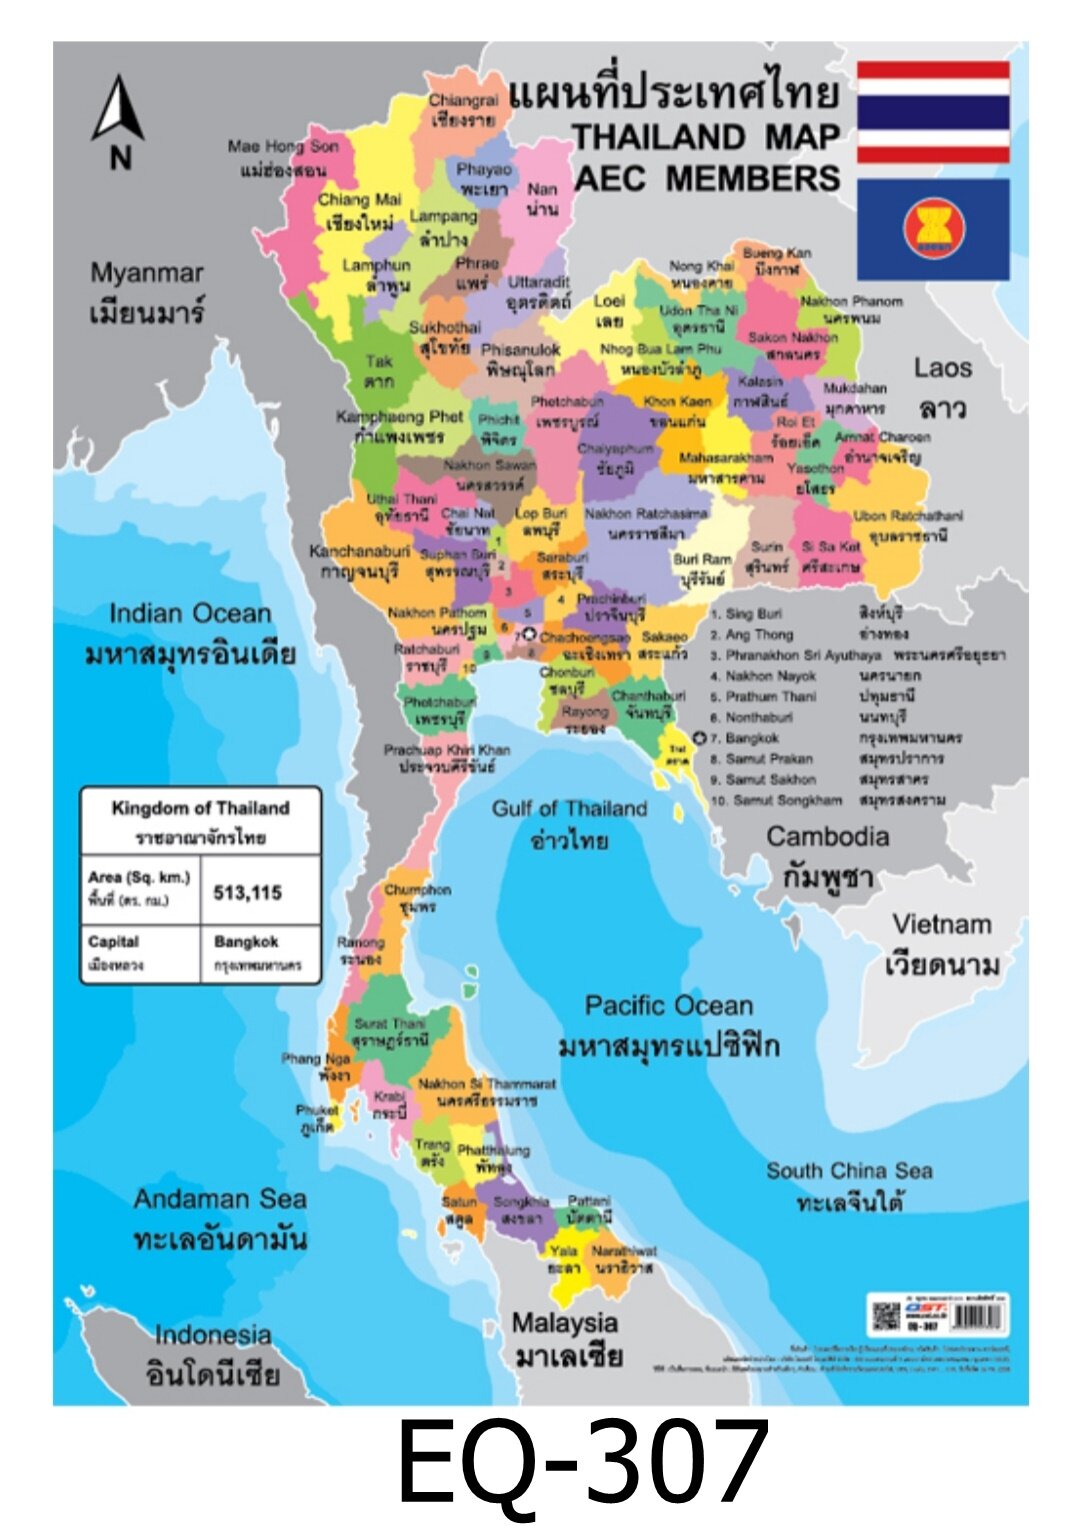 แผนที่ประเทศไทย 2 ภาษา EQ-307 สื่อโปสเตอร์ภาพ กระดาษ หุ้มพลาสติก